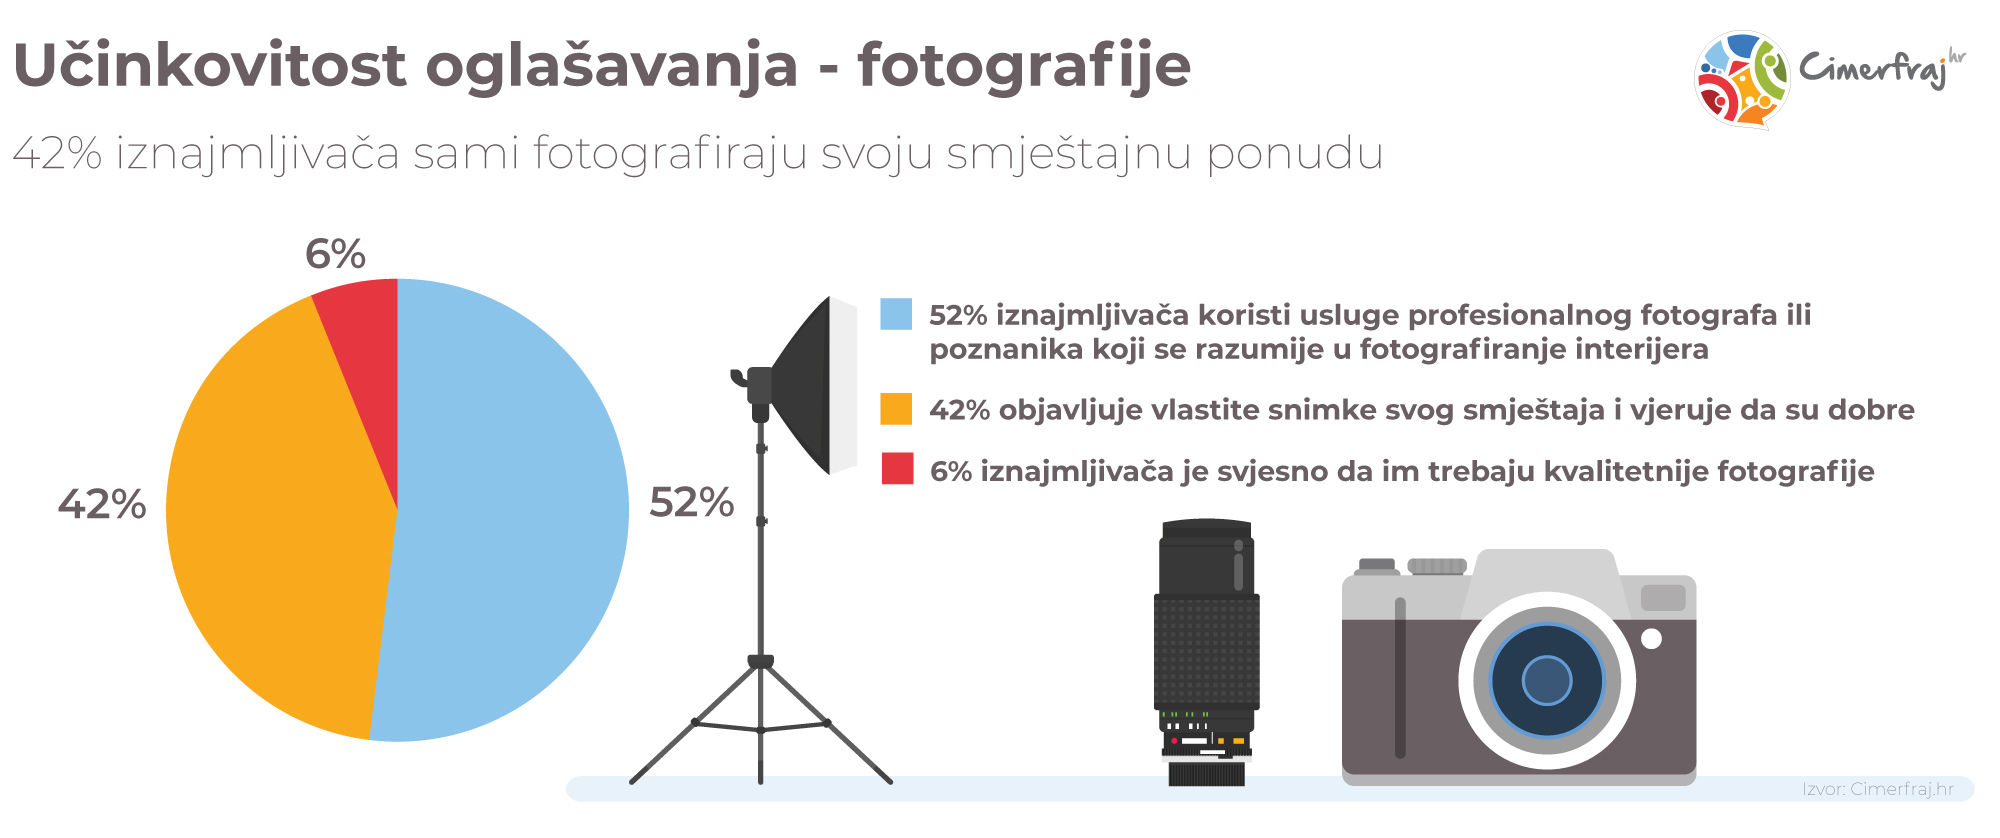 Oglašavanje fotografijama - rezultati ankete